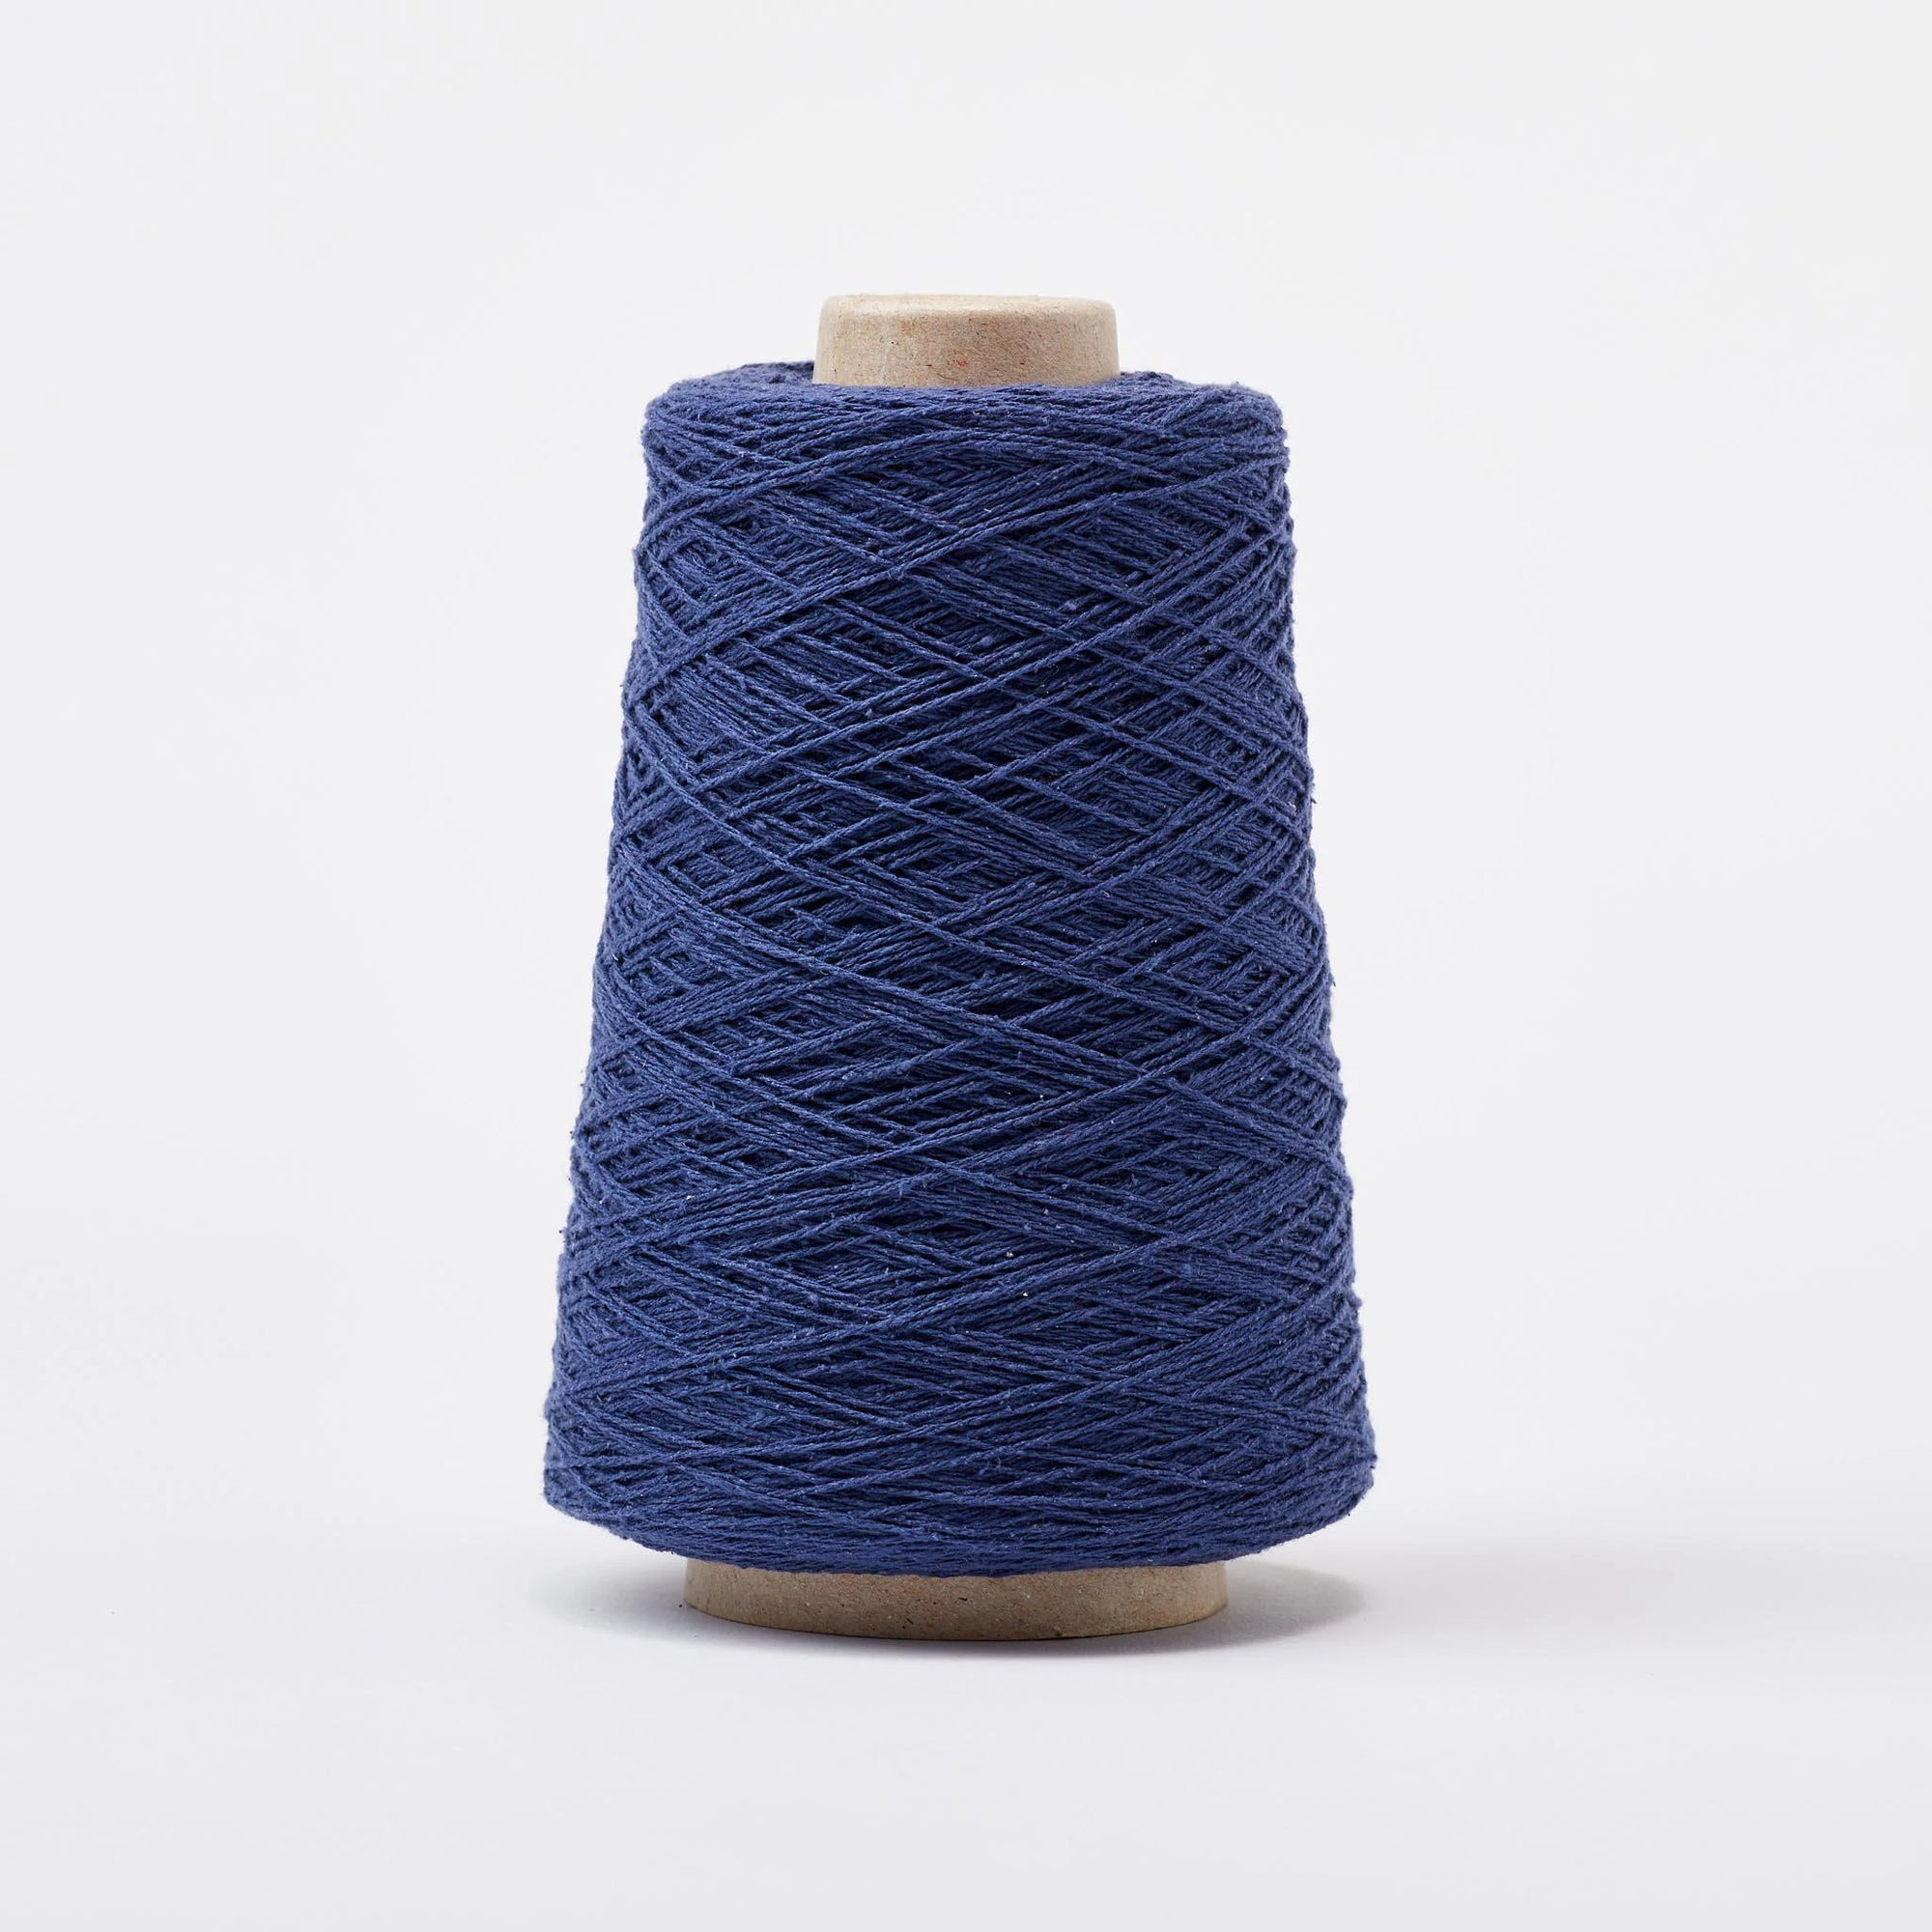 silk noil weaving yarn